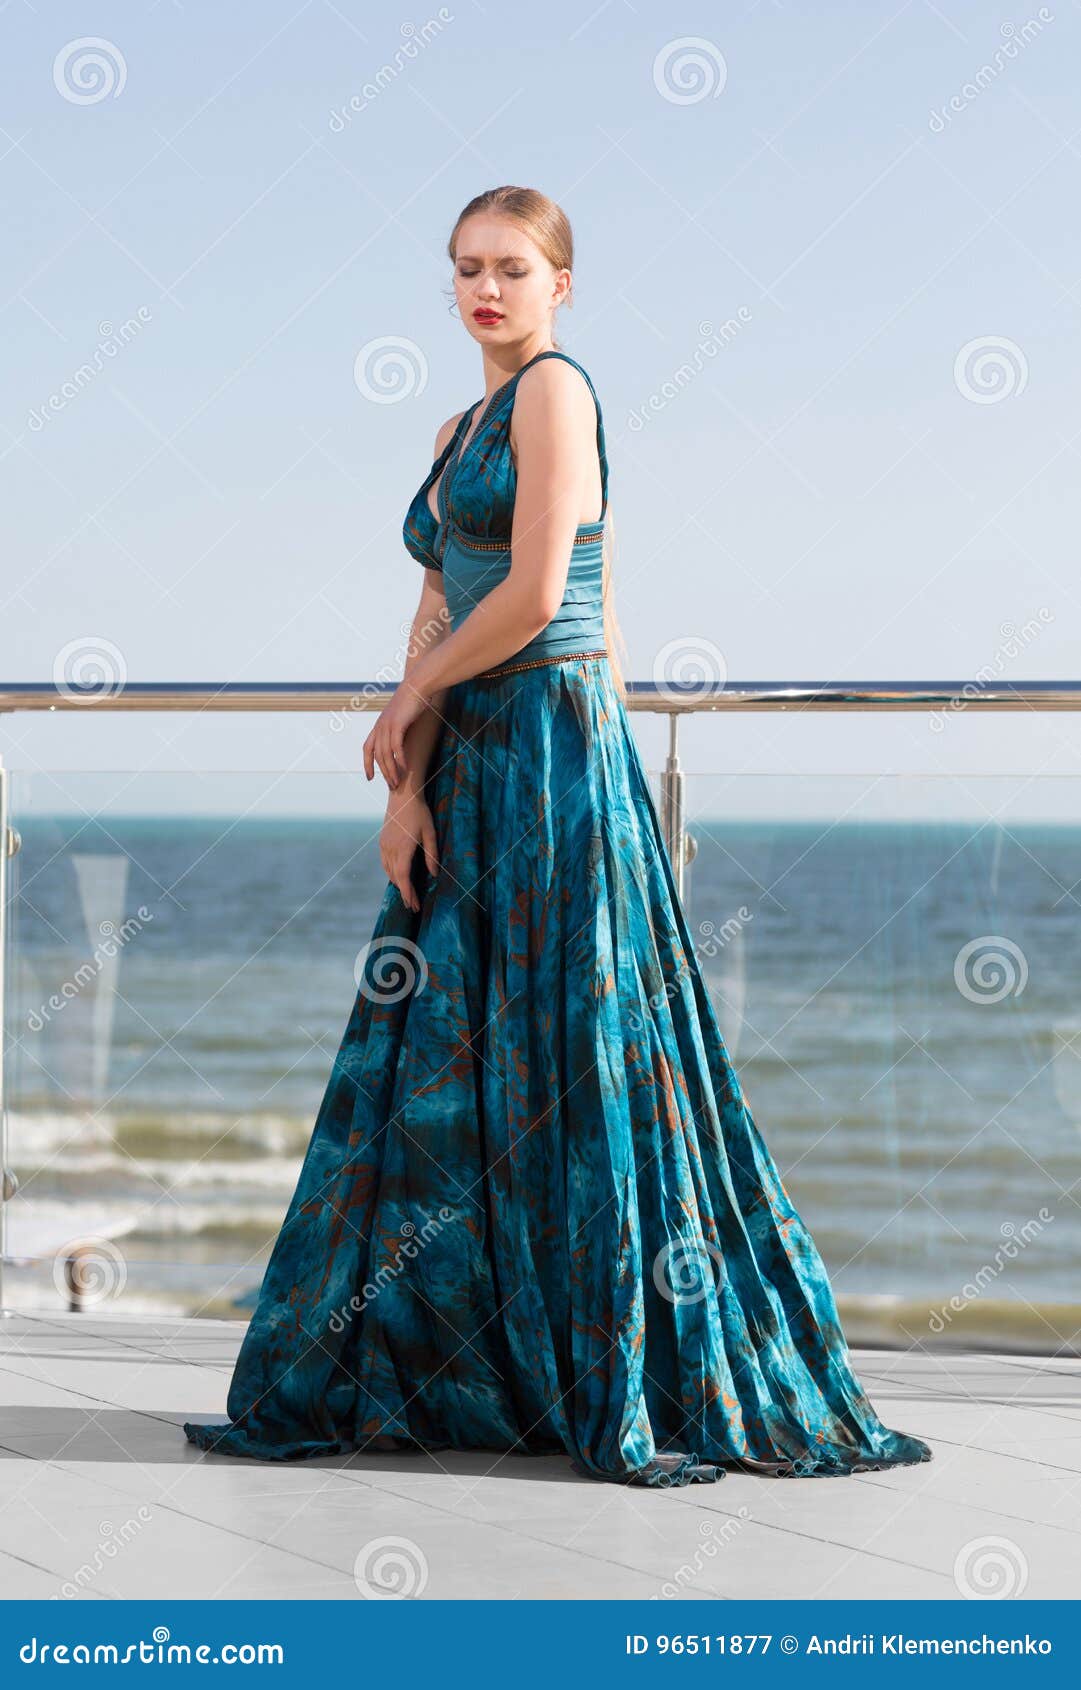 azul esmeralda vestido